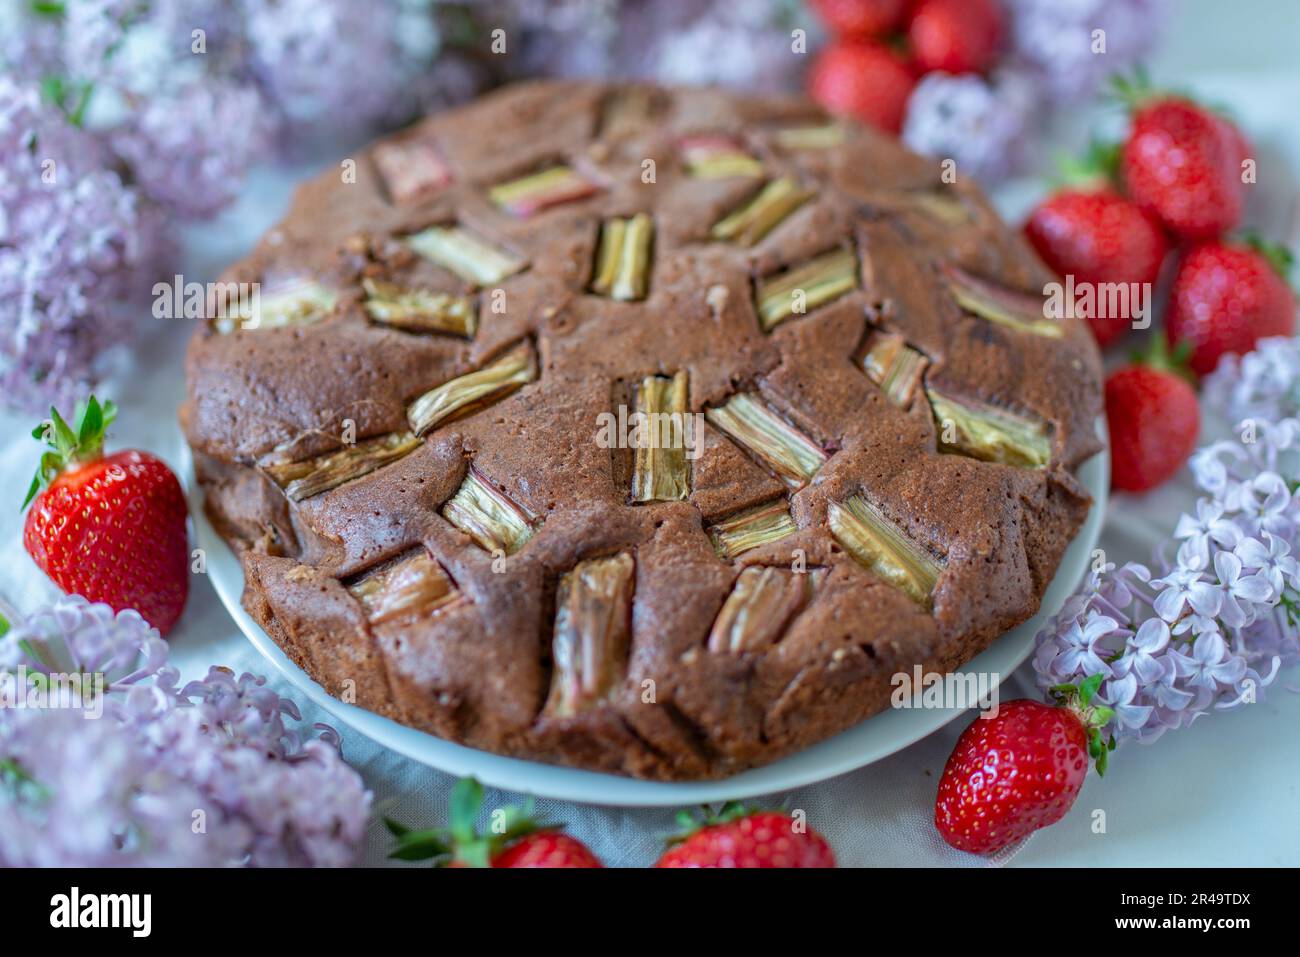 Gâteau au chocolat avec rhubarbe dans un plat de cuisson Banque D'Images